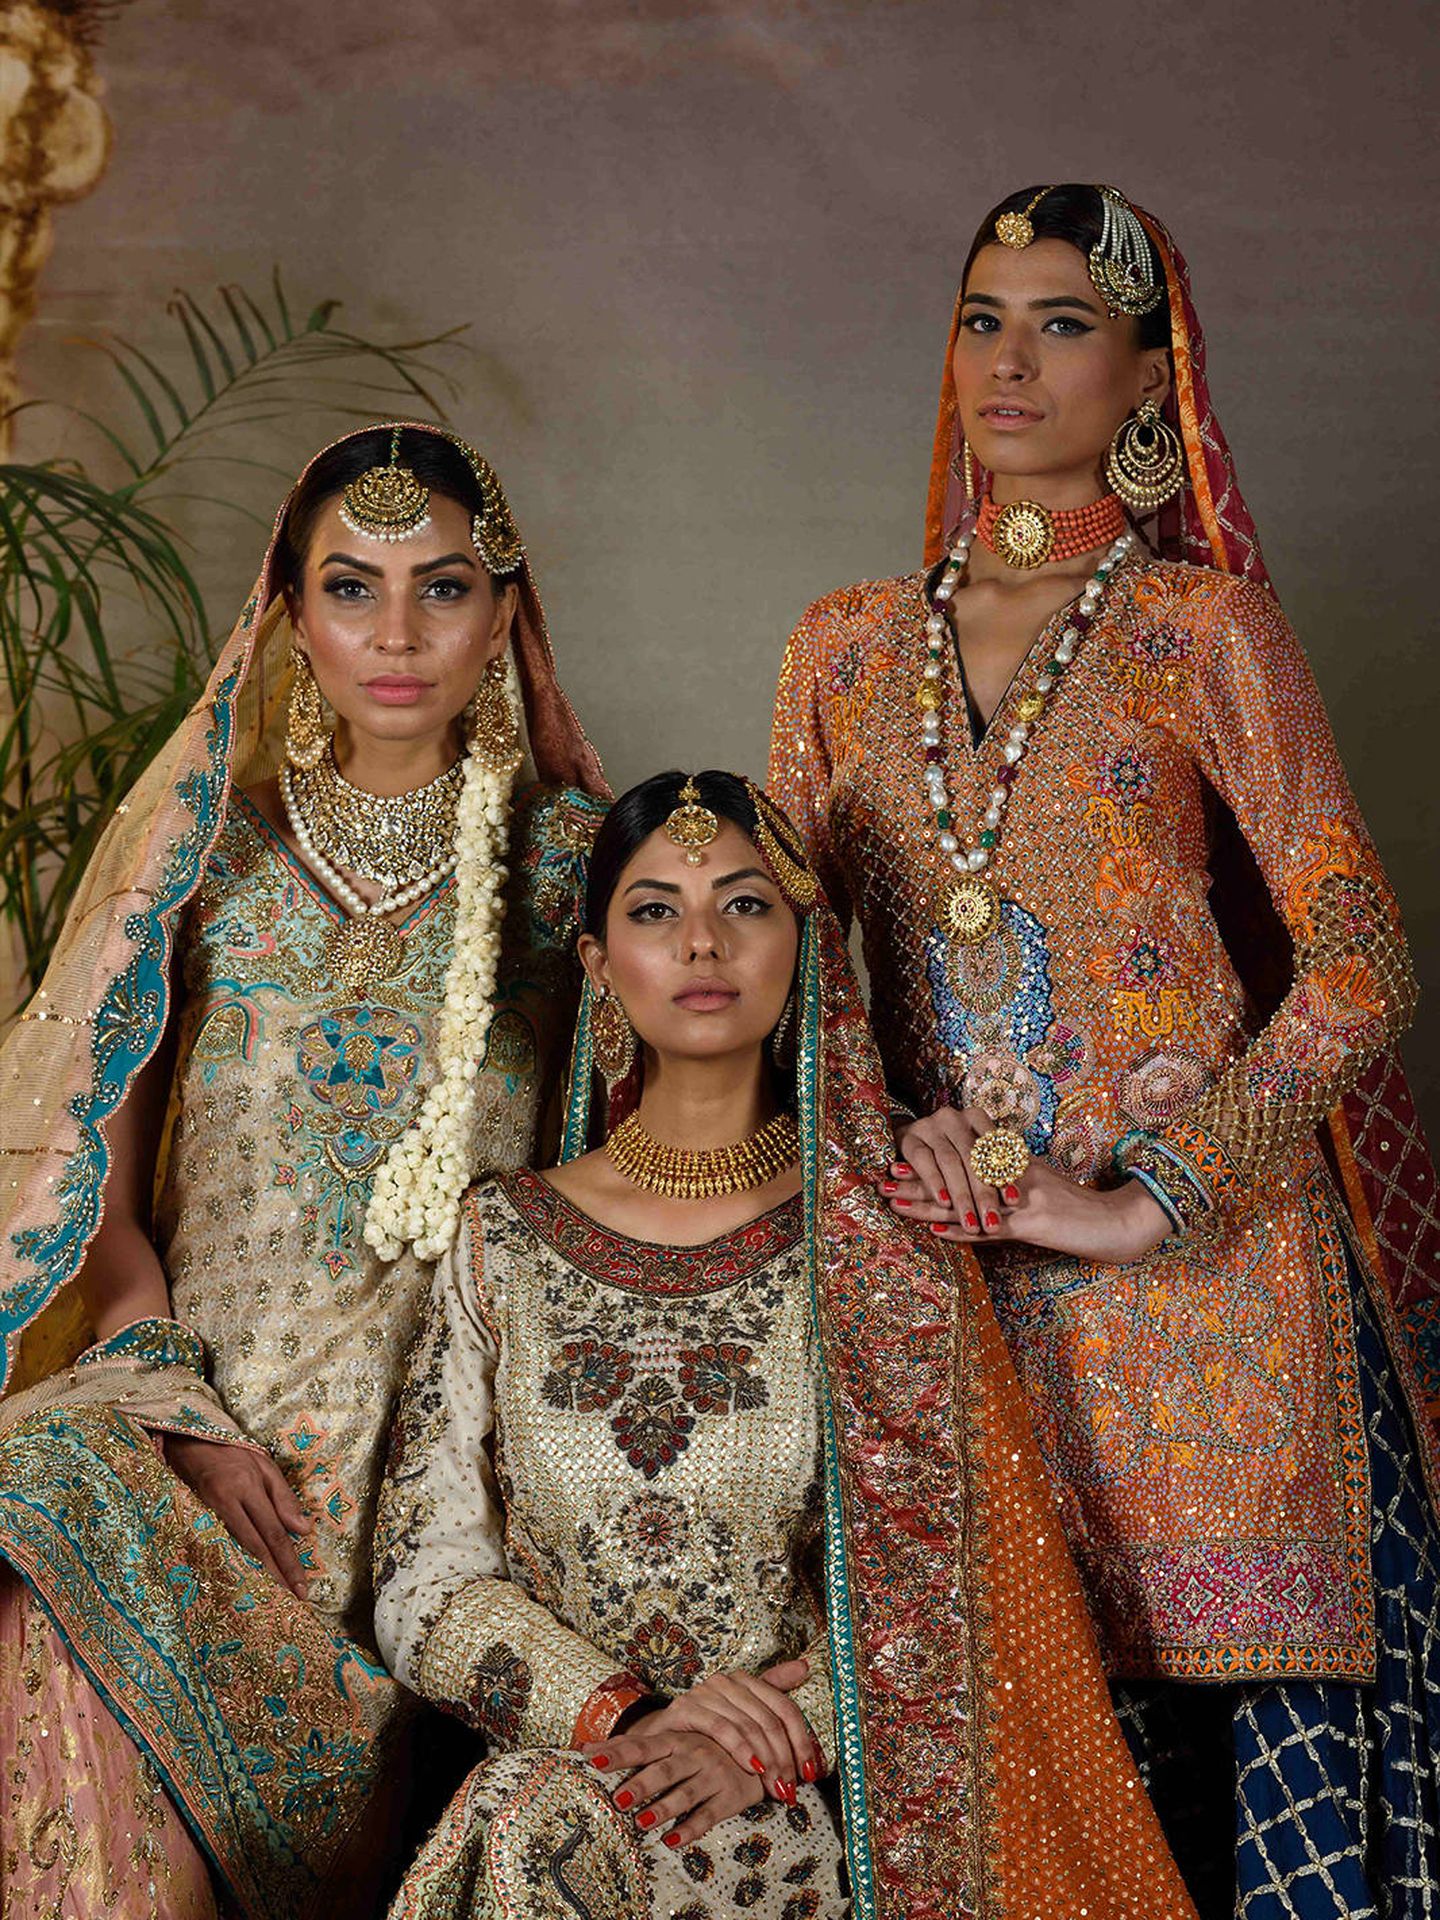 Las mujeres en Pakistán expresan cada vez más su mayor libertad a través de la moda. (Wardha Saleem)